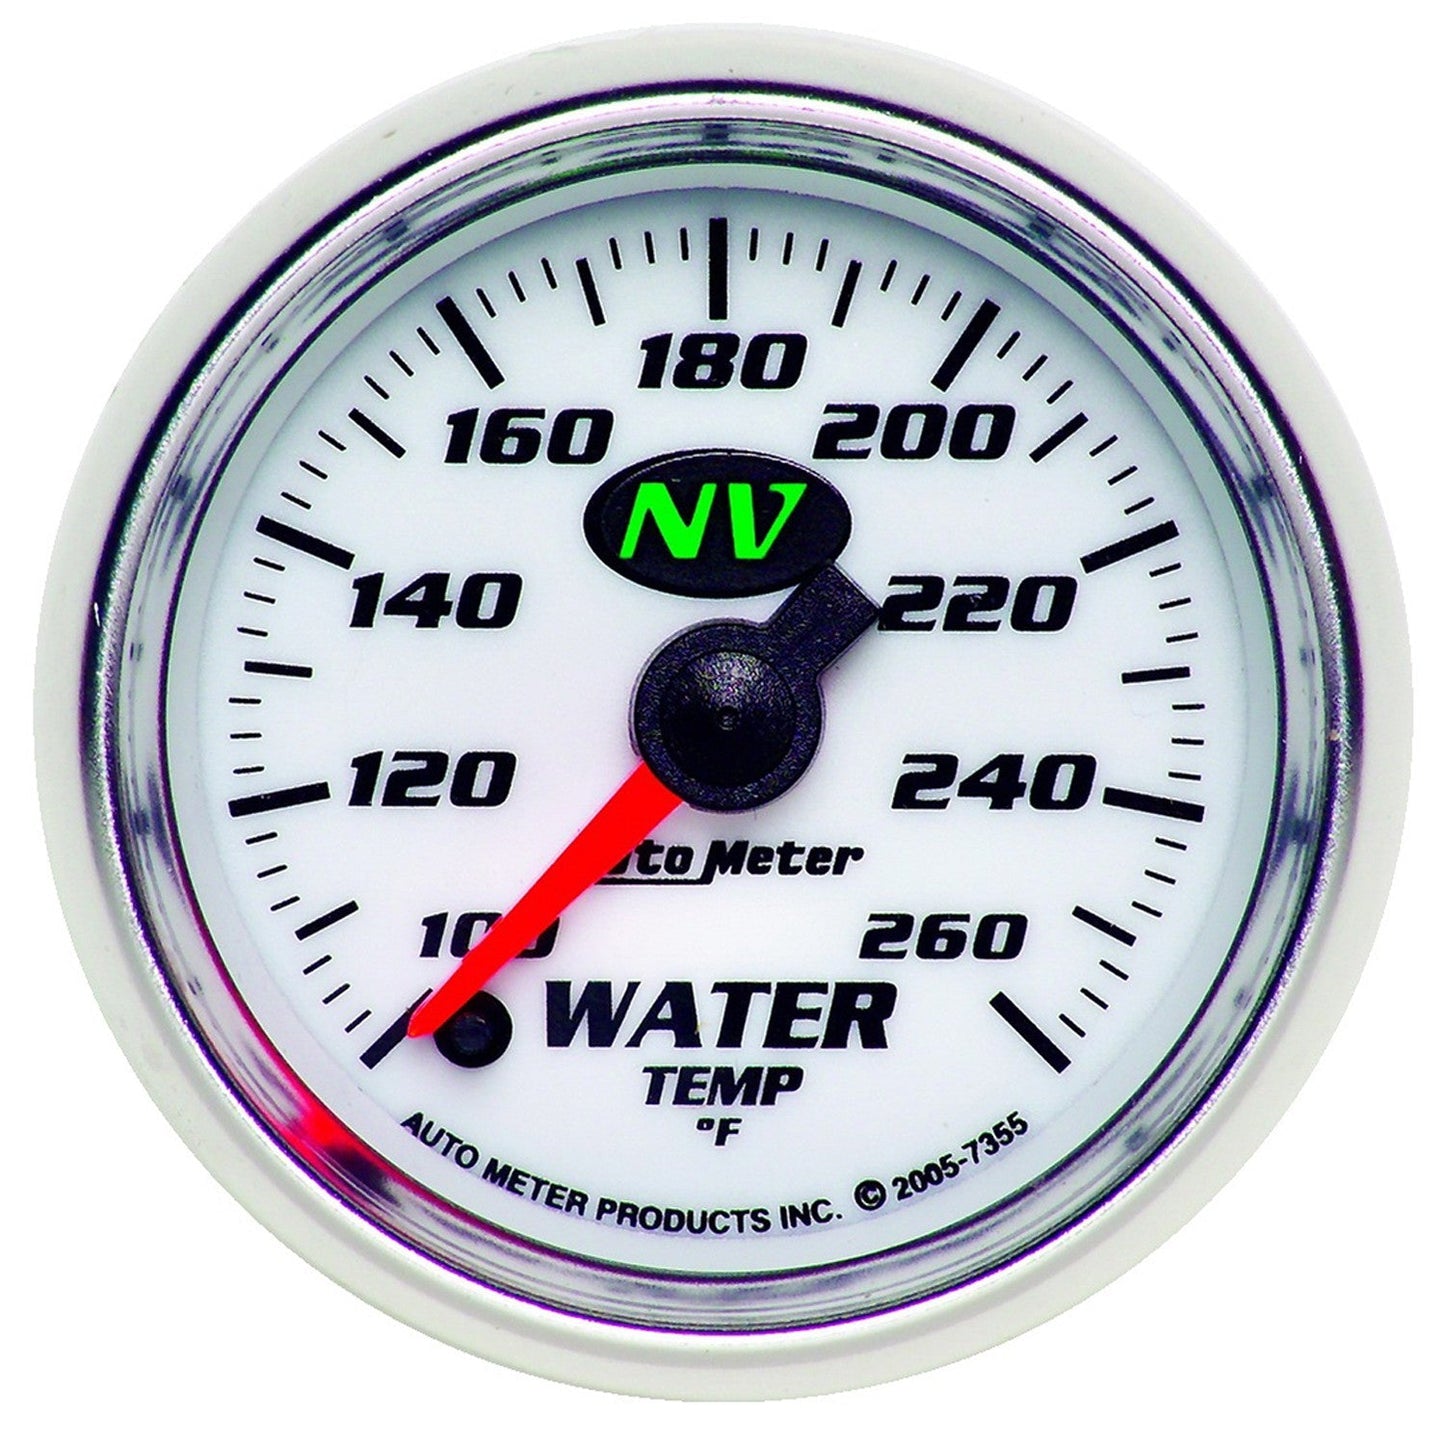 AutoMeter - 2-1/16" TEMPERATURA DEL AGUA, 100-260 °F, MOTOR PASO A PASO, NV (7355) 